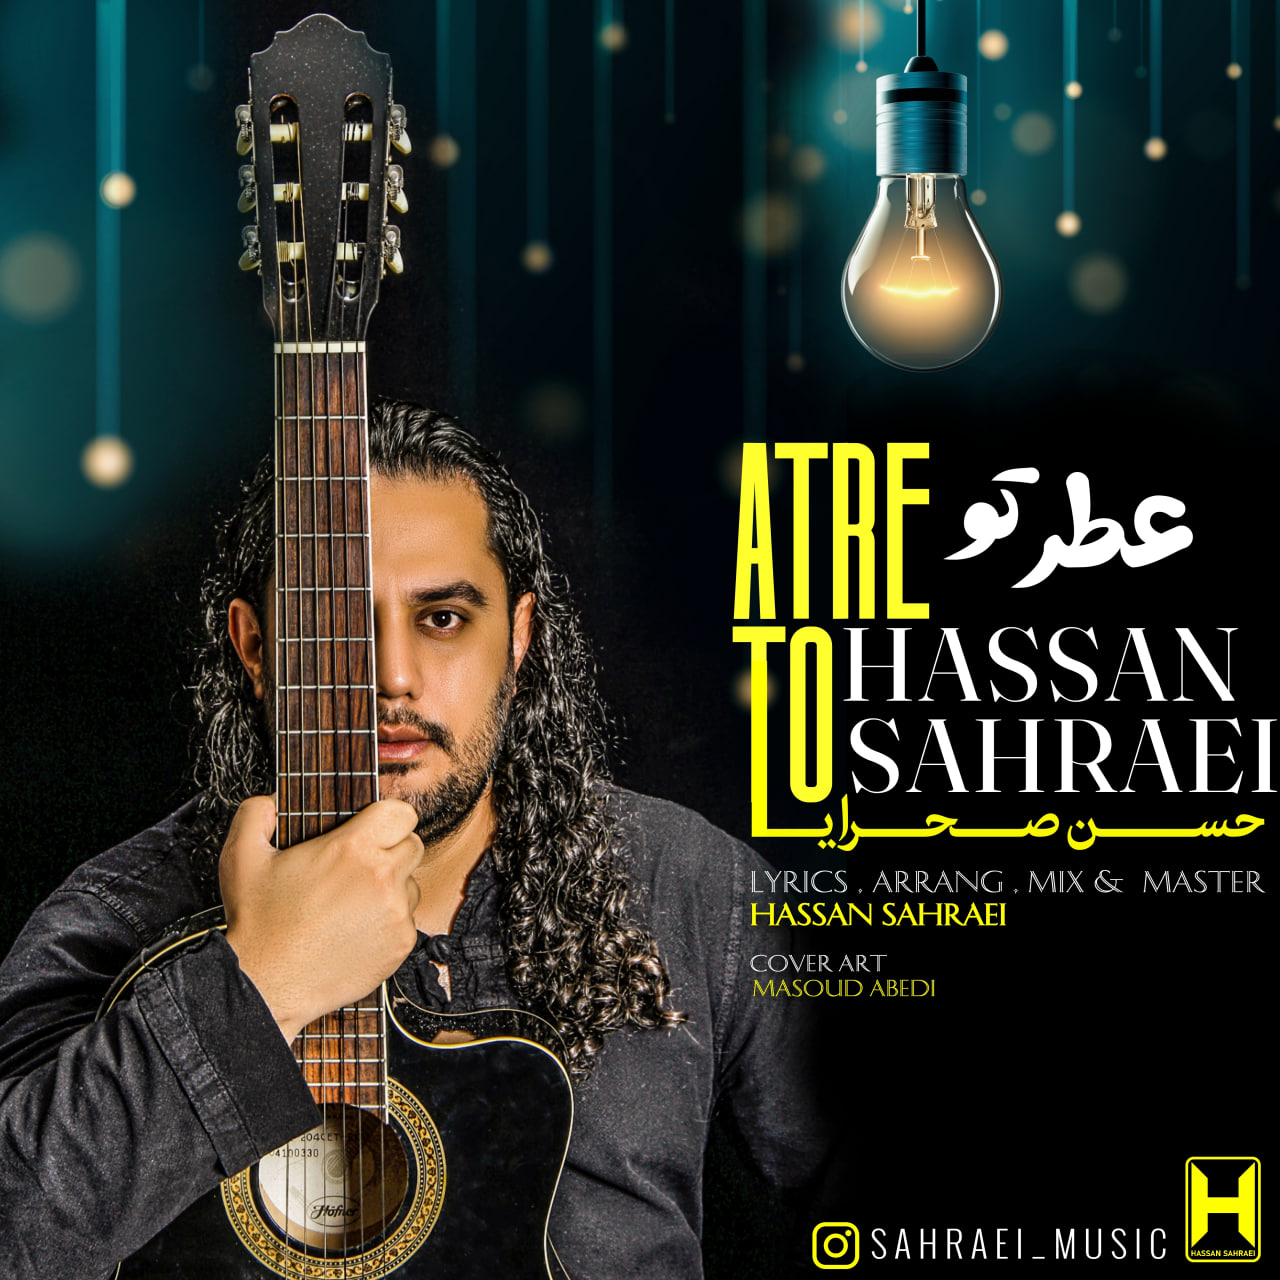 Hassan Sahraei – Atre To